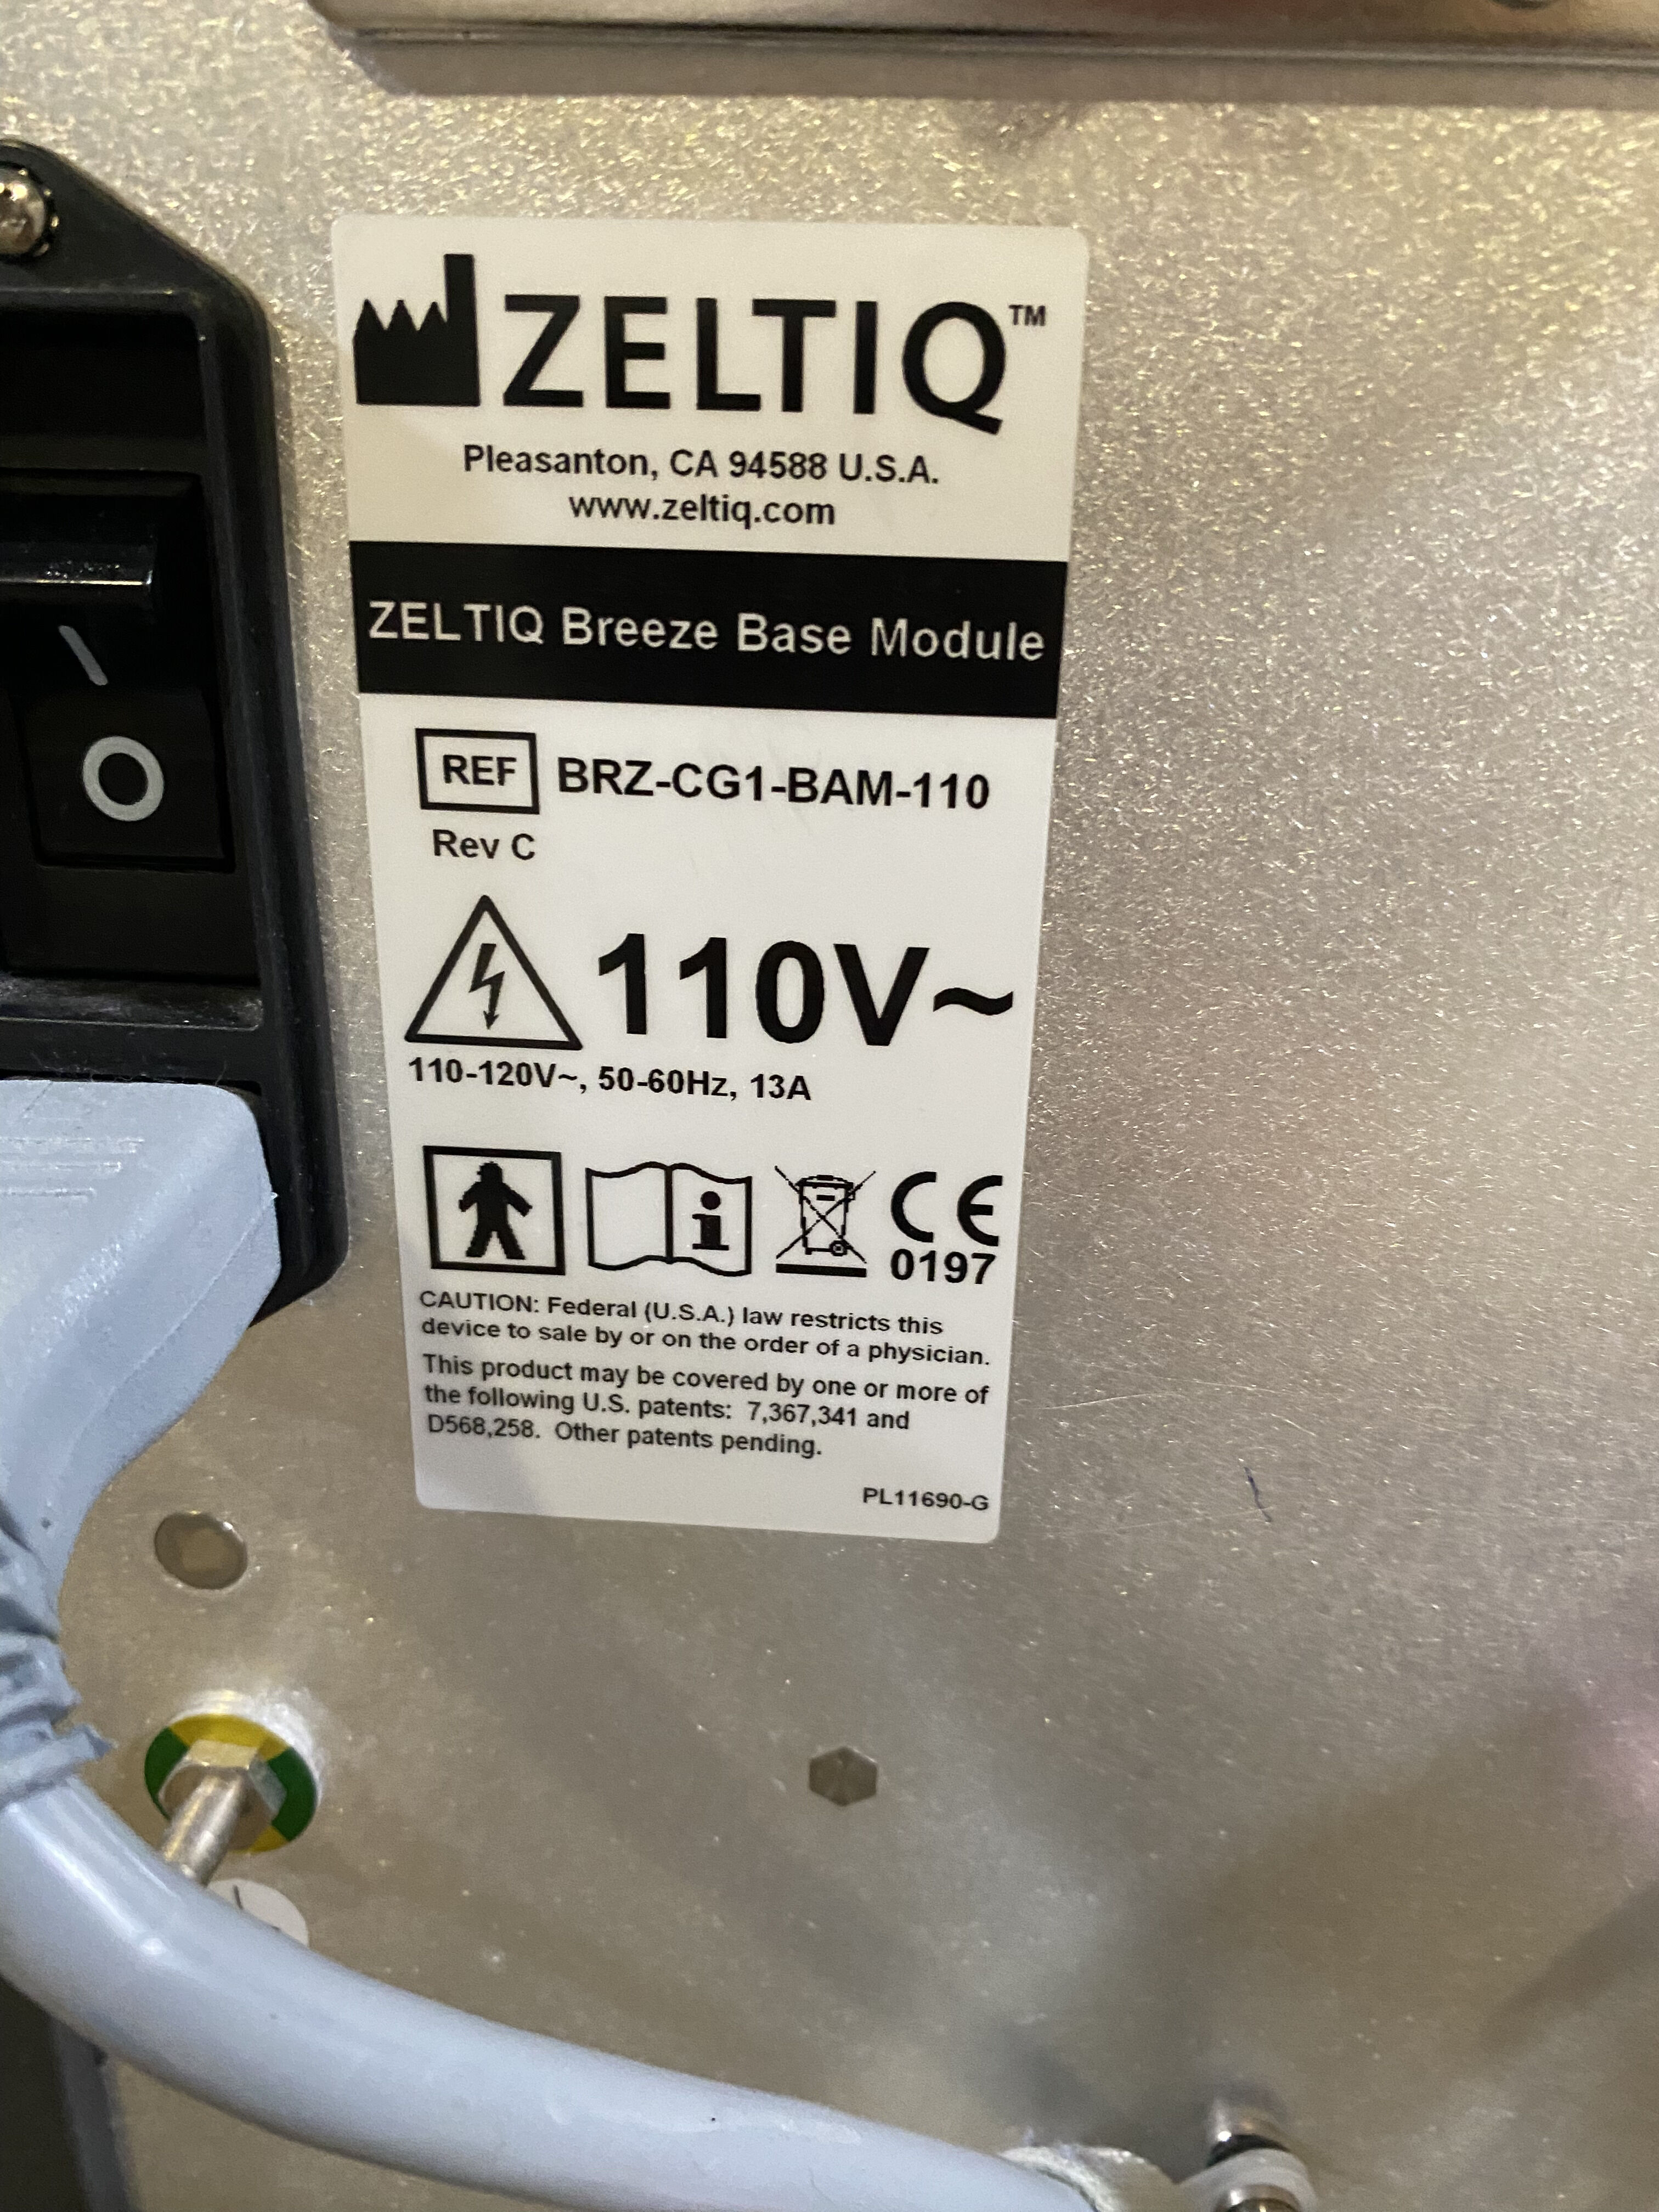 ZELTIQ Coolsculpting System